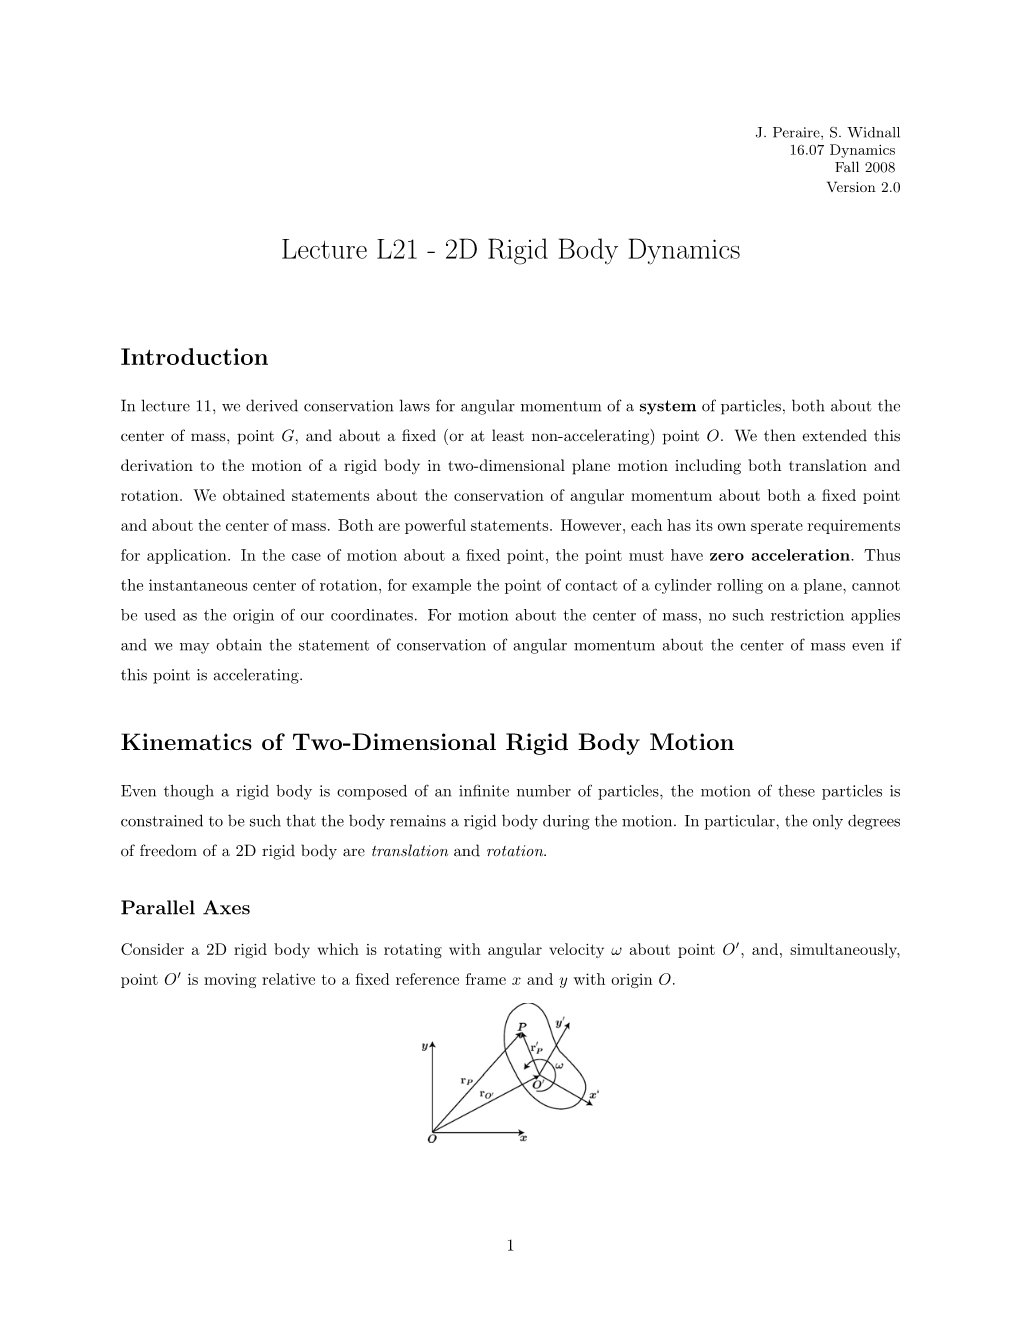 Lecture L21 - 2D Rigid Body Dynamics